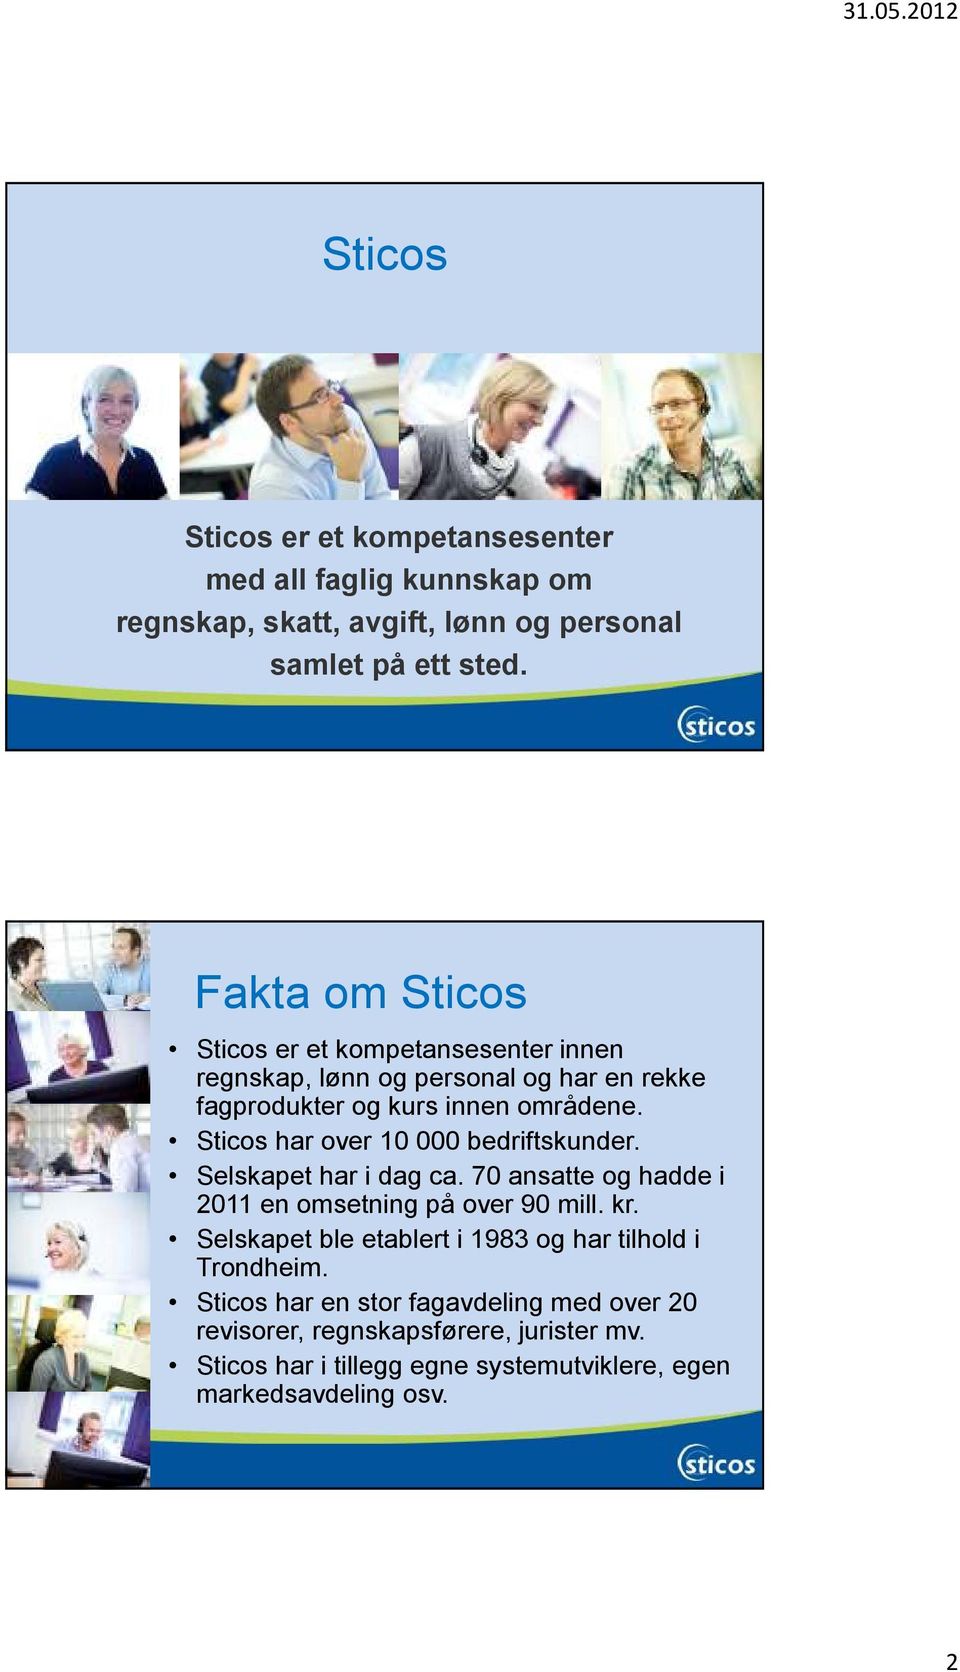 Sticos har over 10 000 bedriftskunder. Selskapet har i dag ca. 70 ansatte og hadde i 2011 en omsetning på over 90 mill. kr.